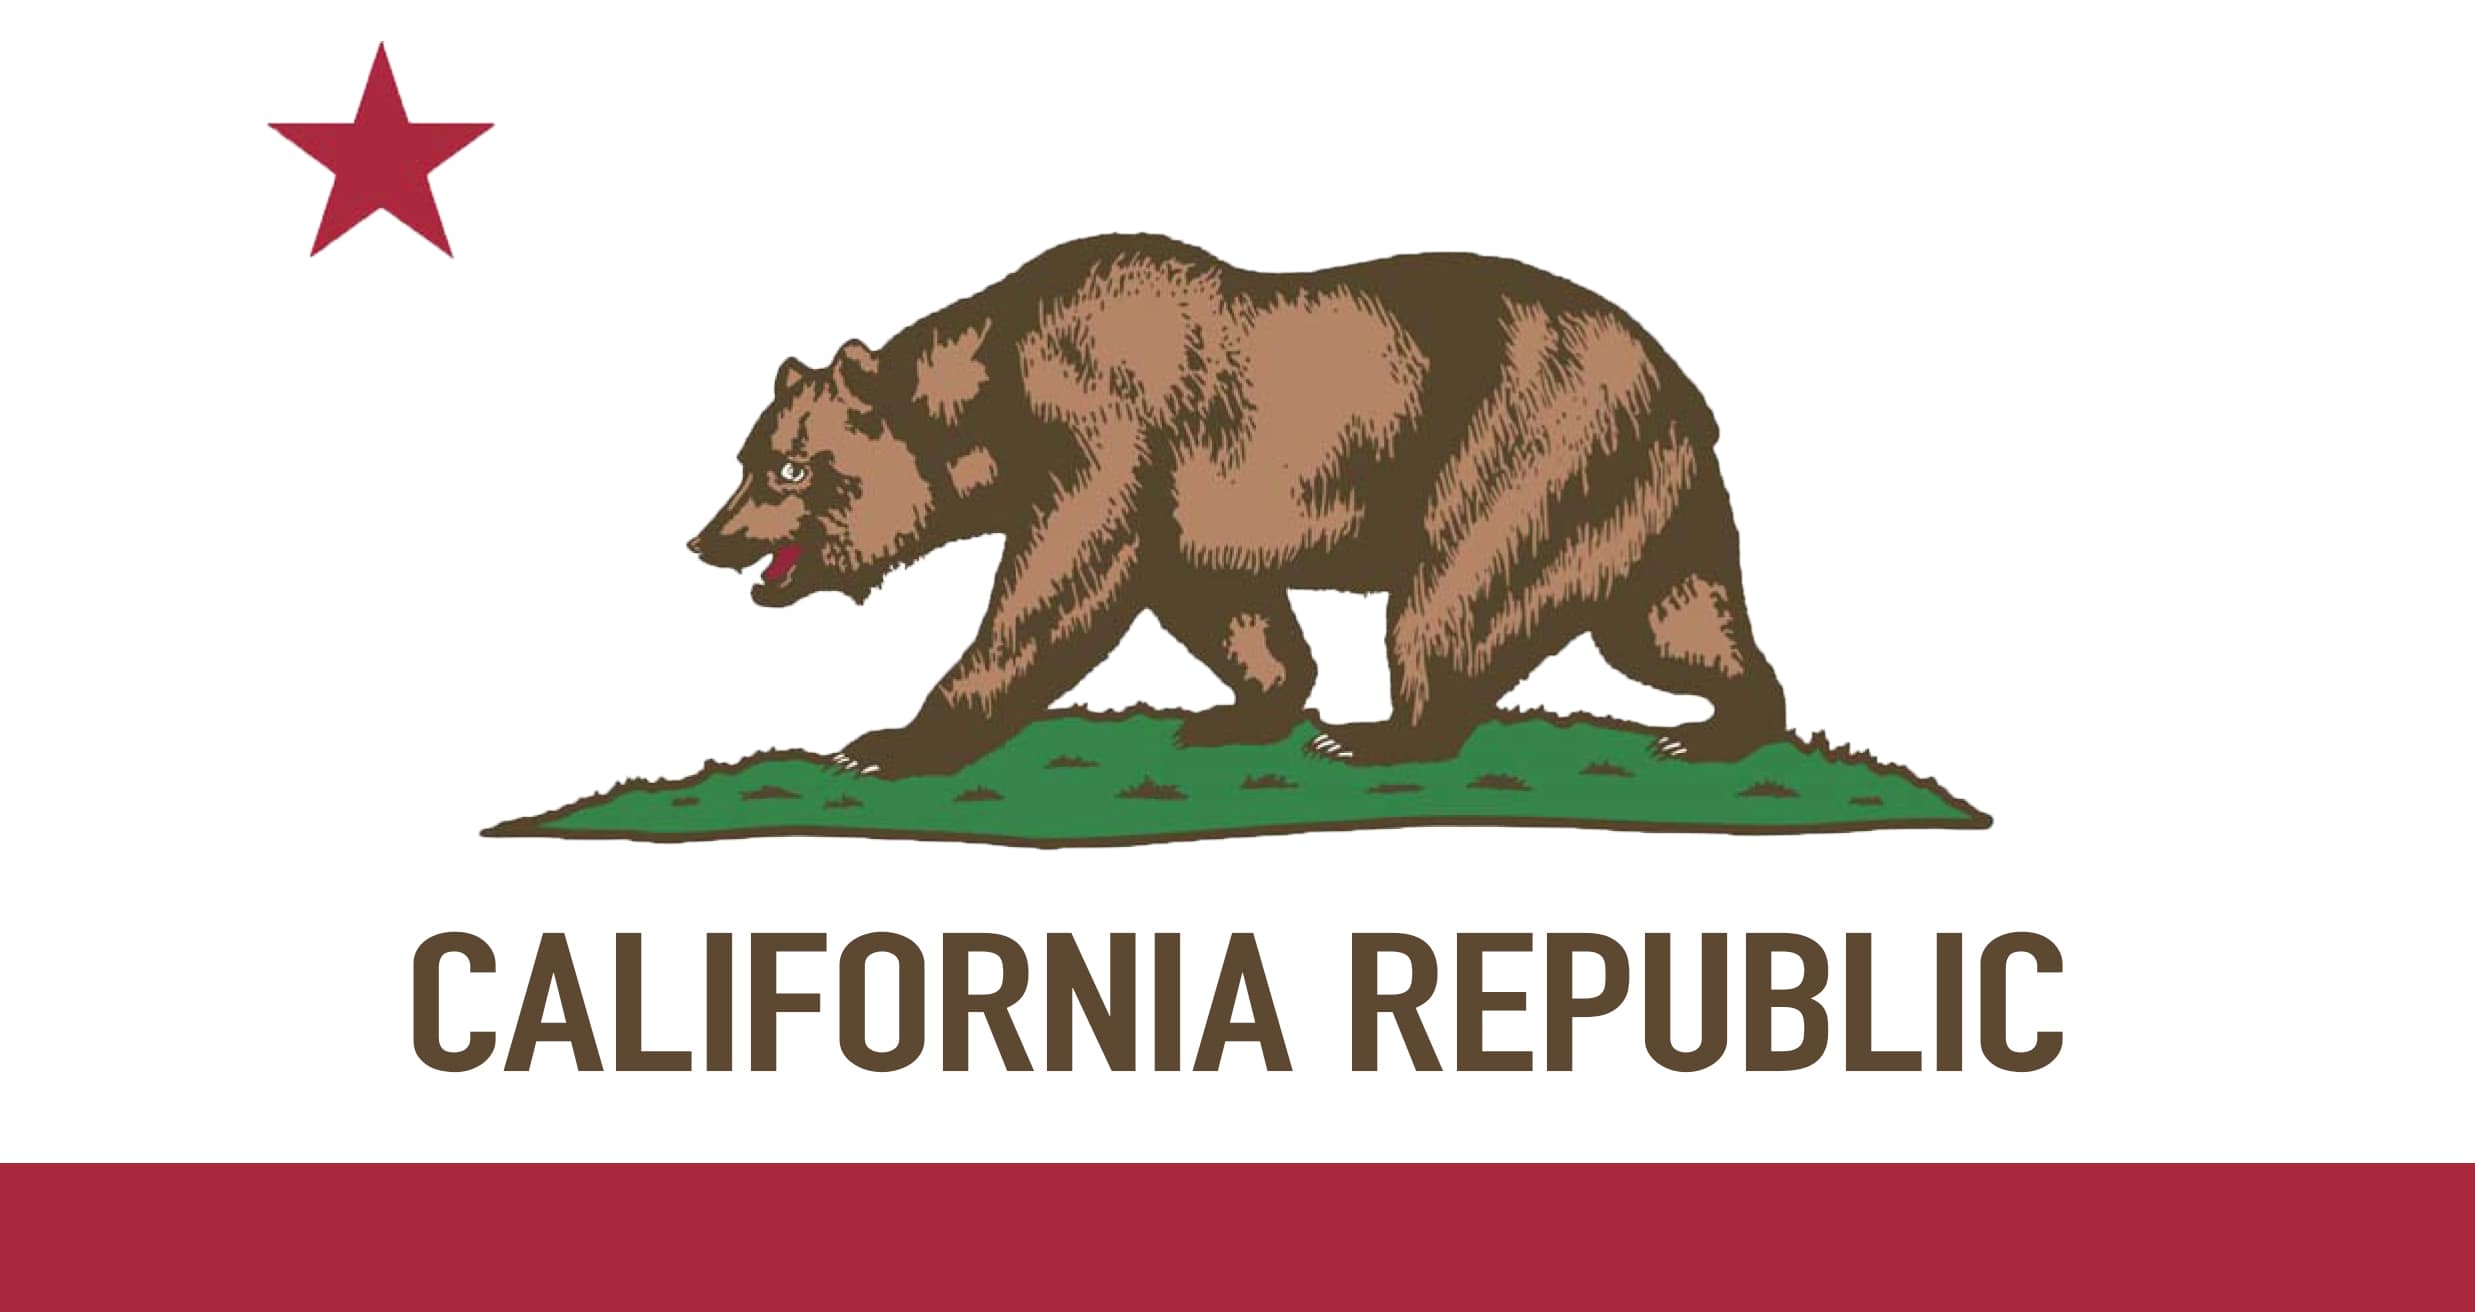 Calfornia Republic